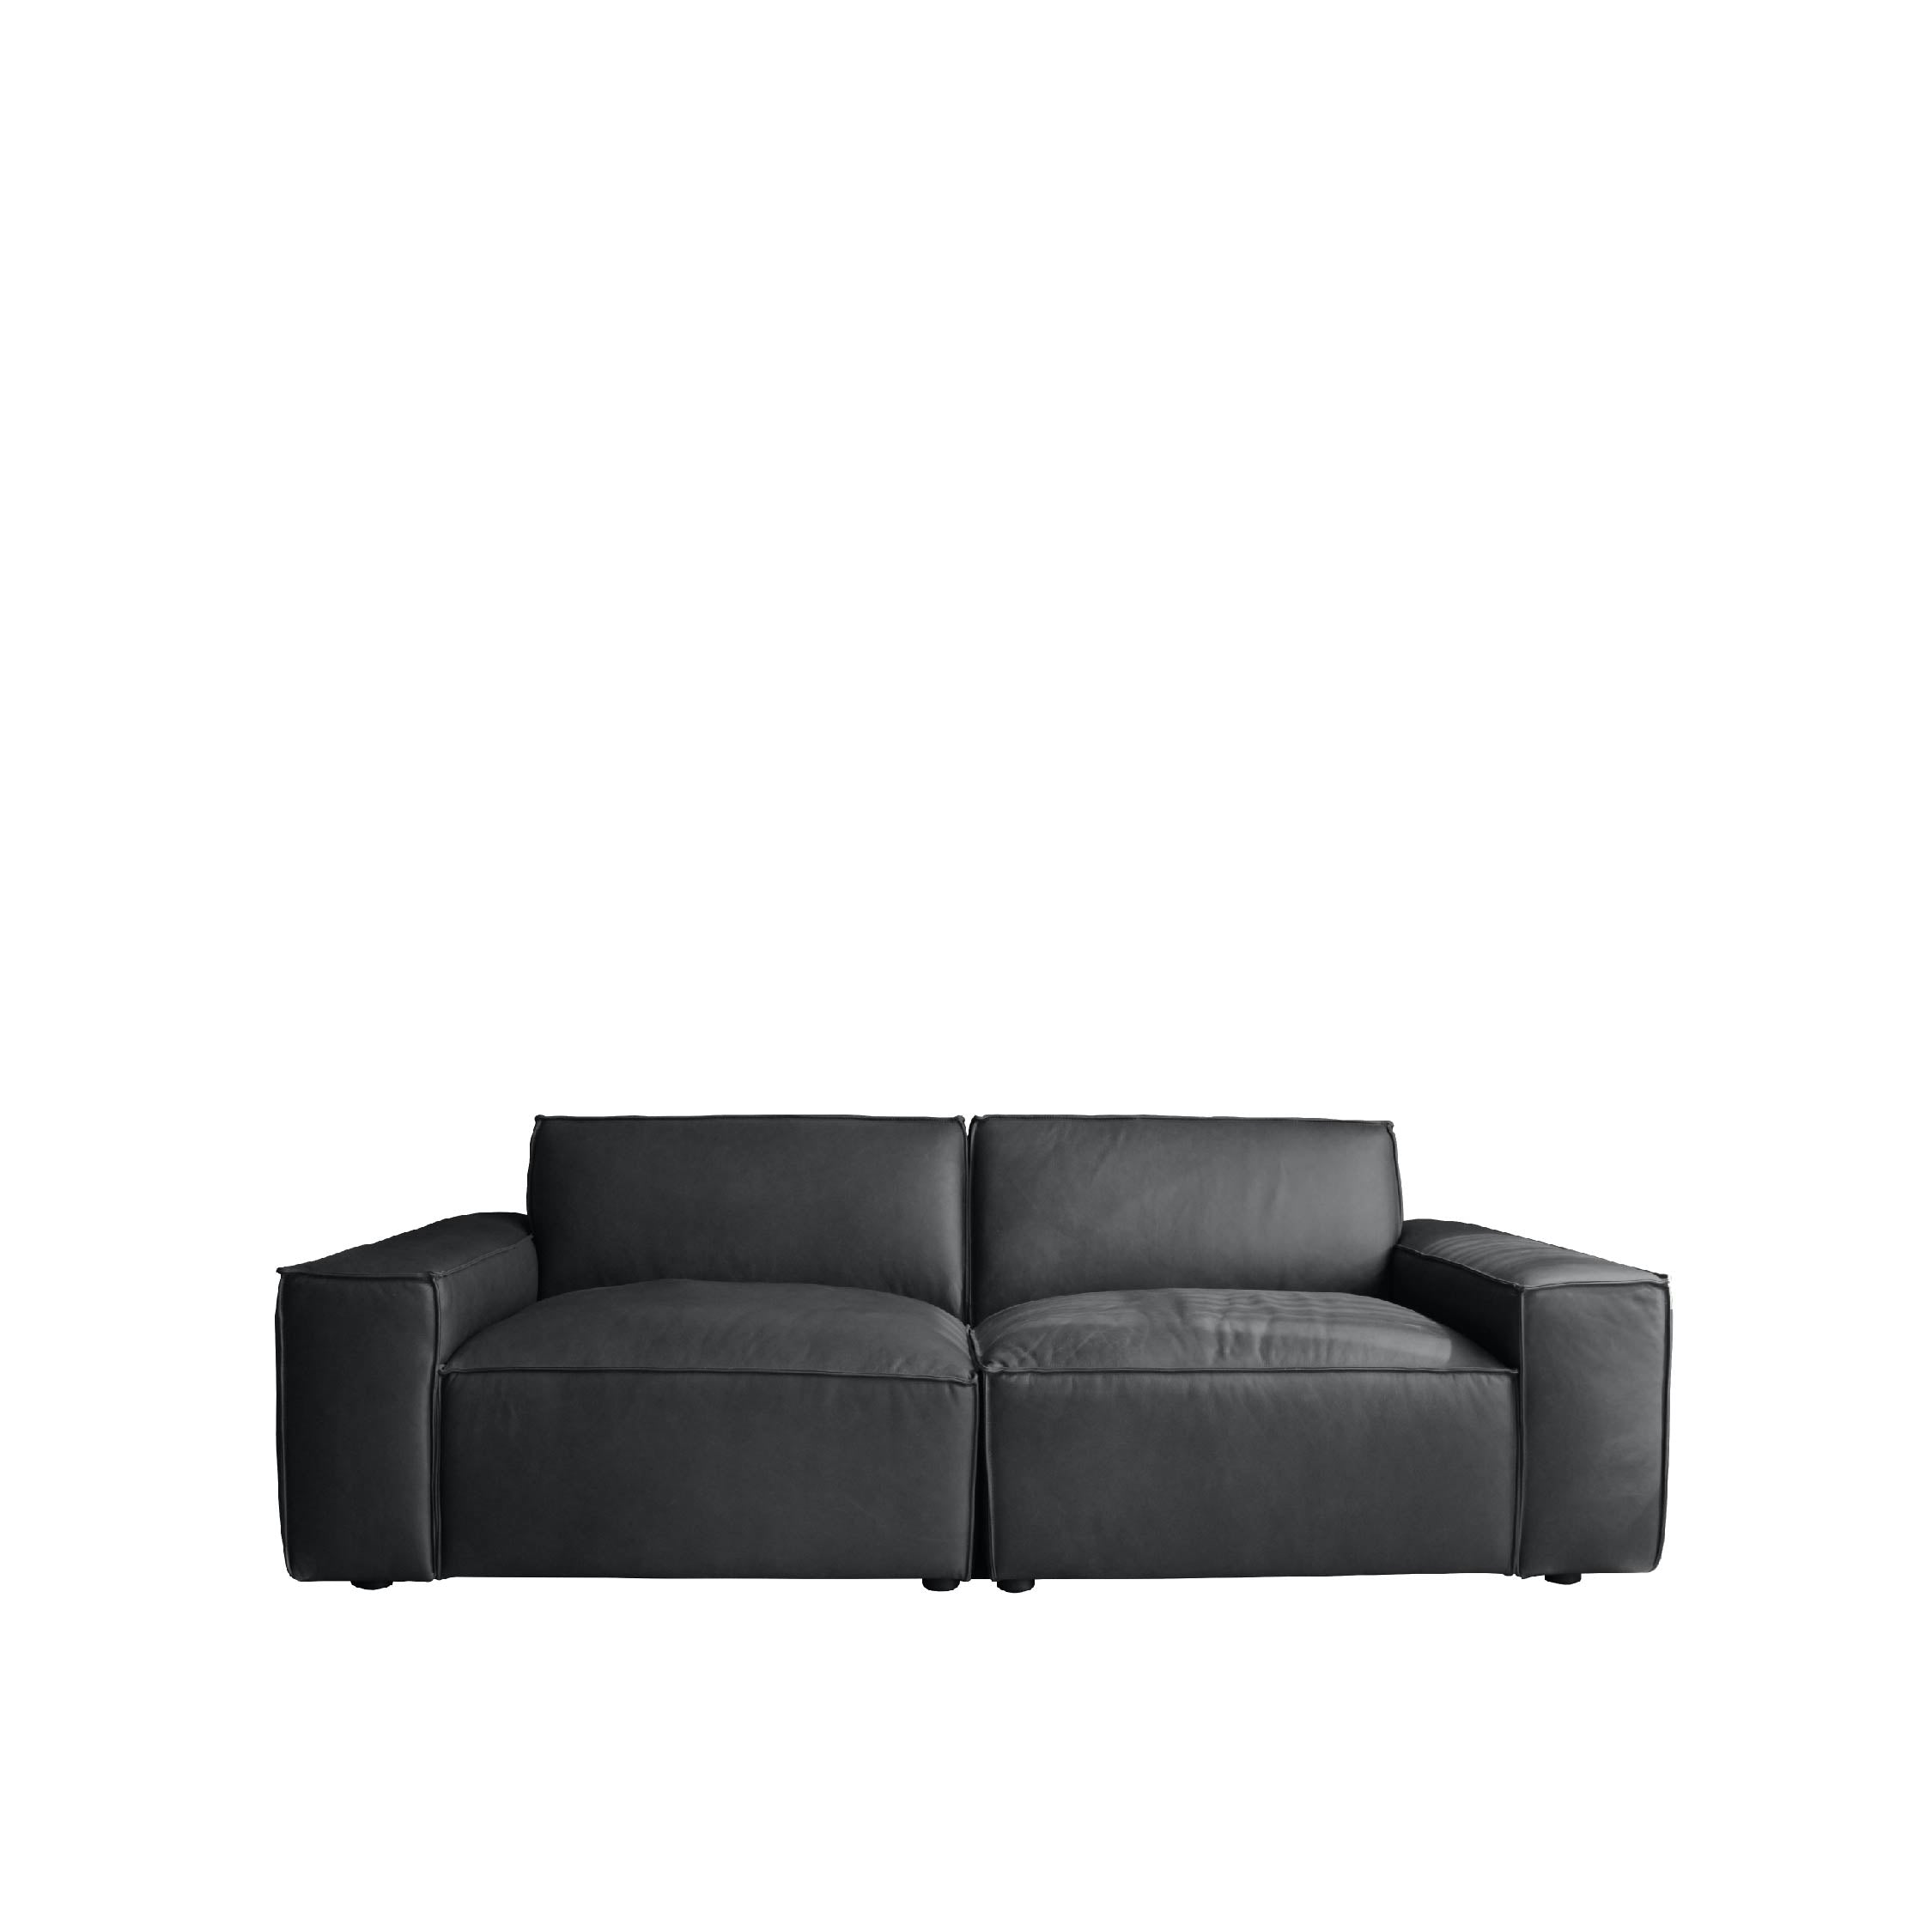 ESSIMETRI Sofa 3 Seater (Leather)